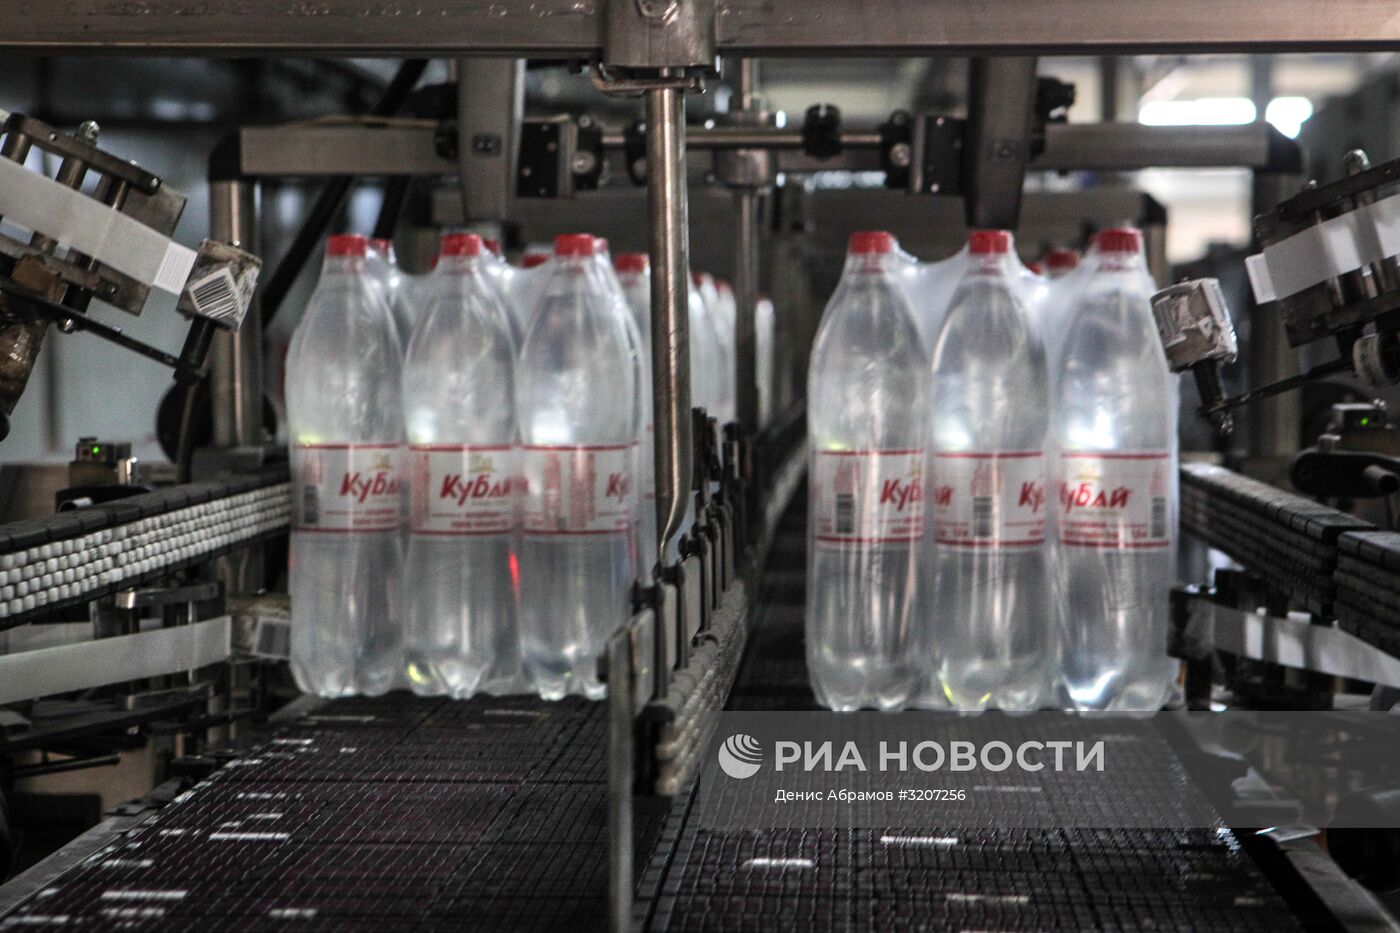 Производство минеральной и питьевой воды в Карачаево-Черкесии